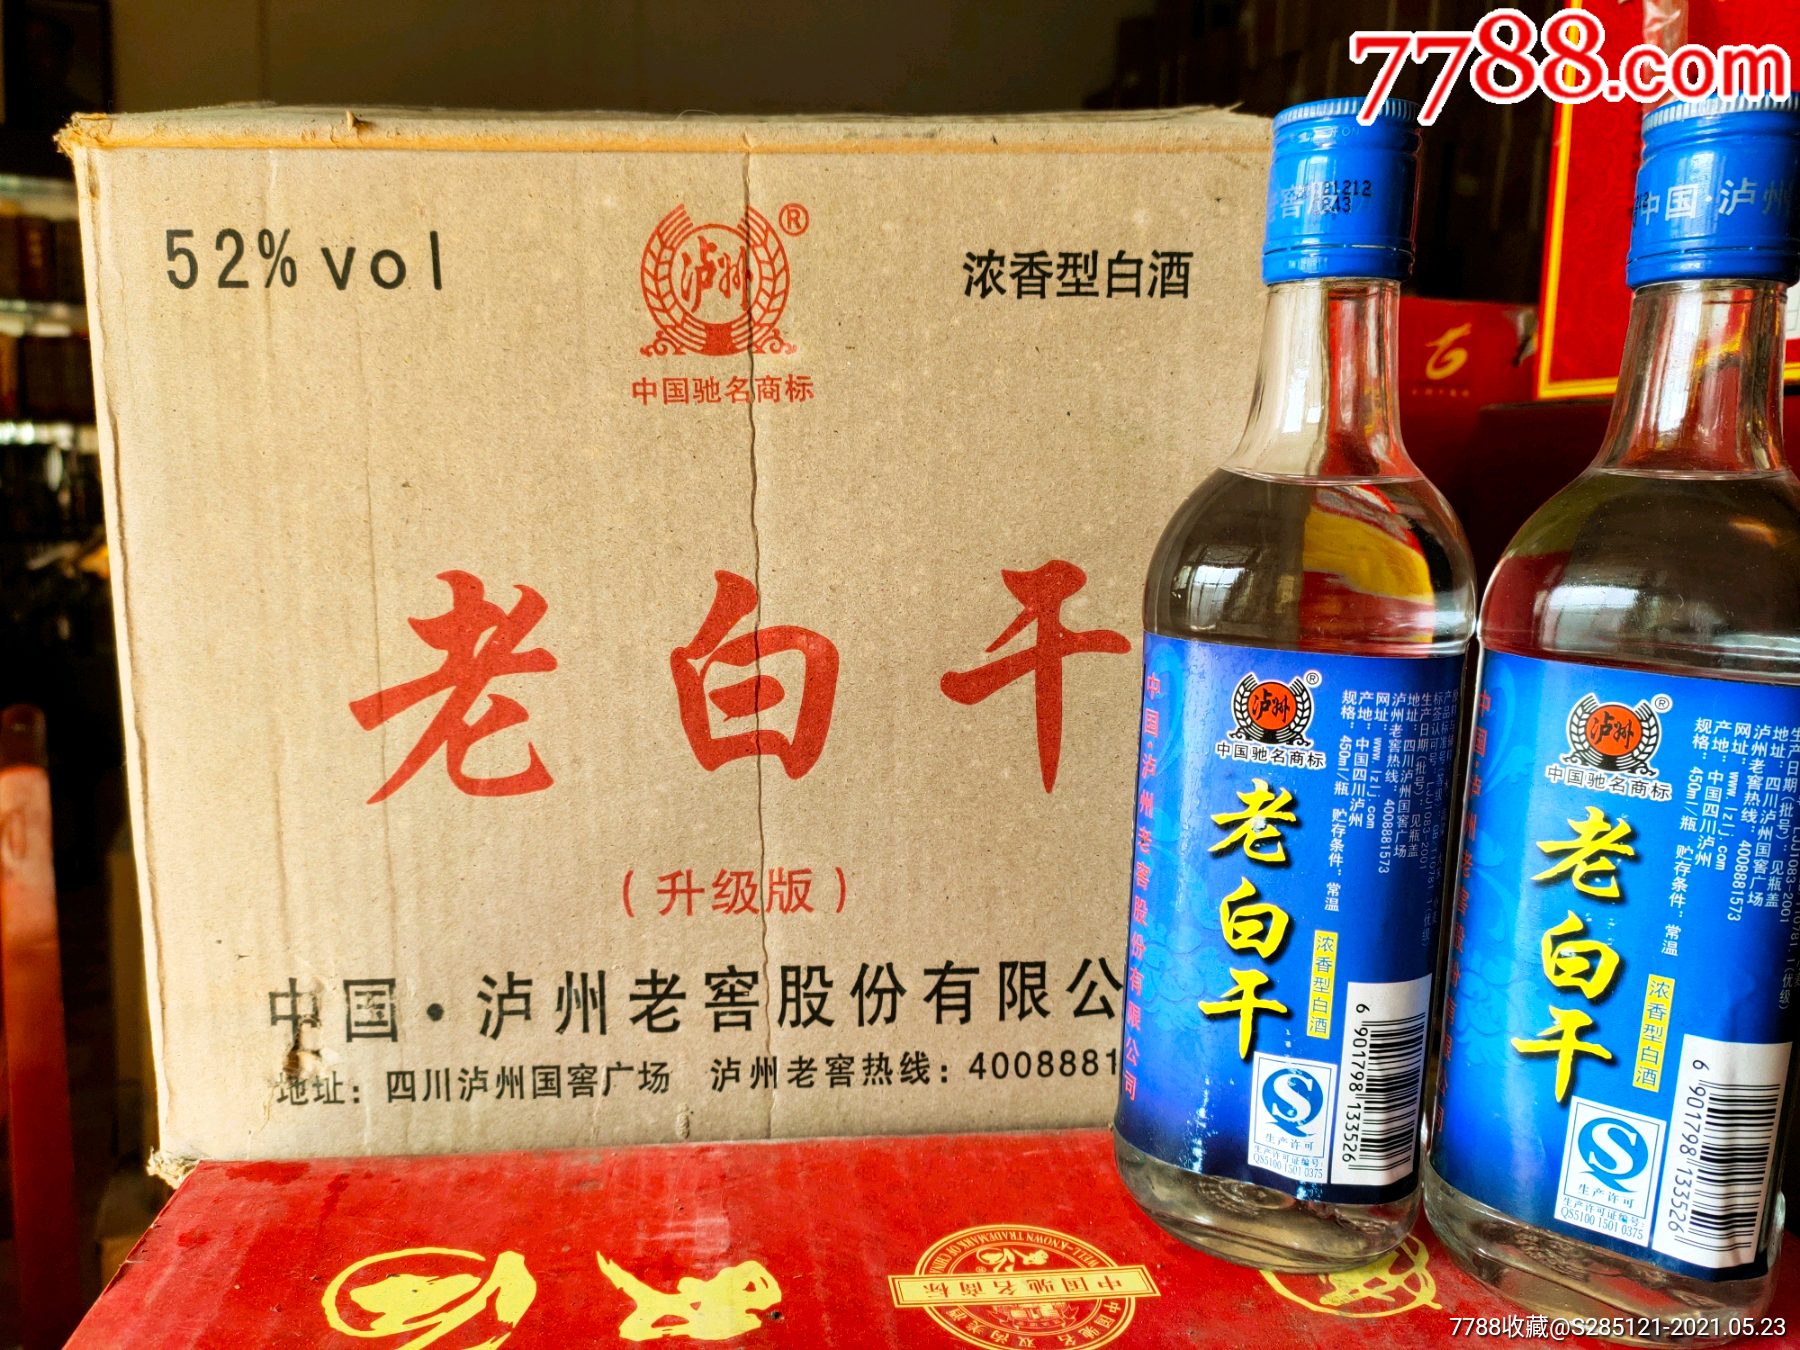 201213年52度泸州老窖老白干酒原箱整件12瓶经典绝版口粮